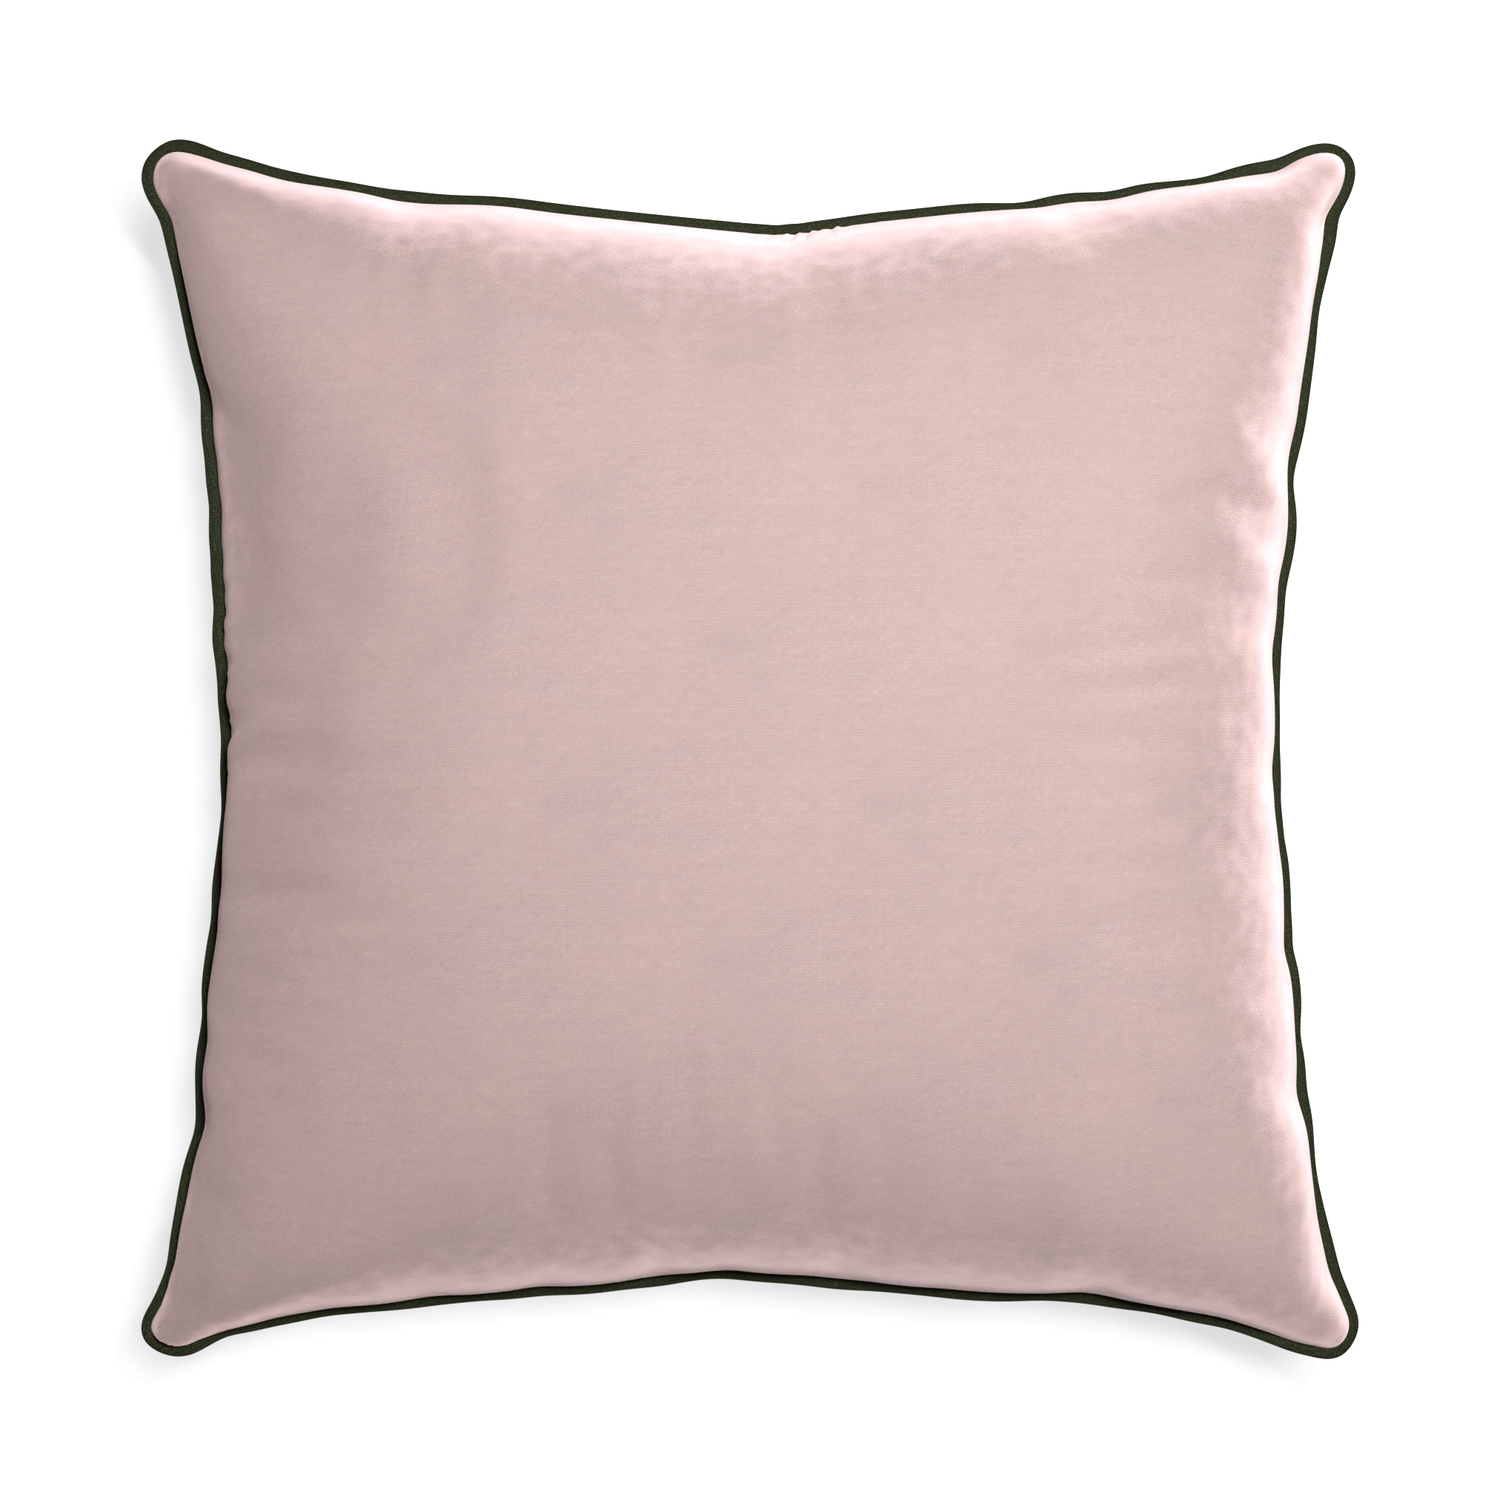 Euro-sham rose velvet custom pillow with f piping on white background